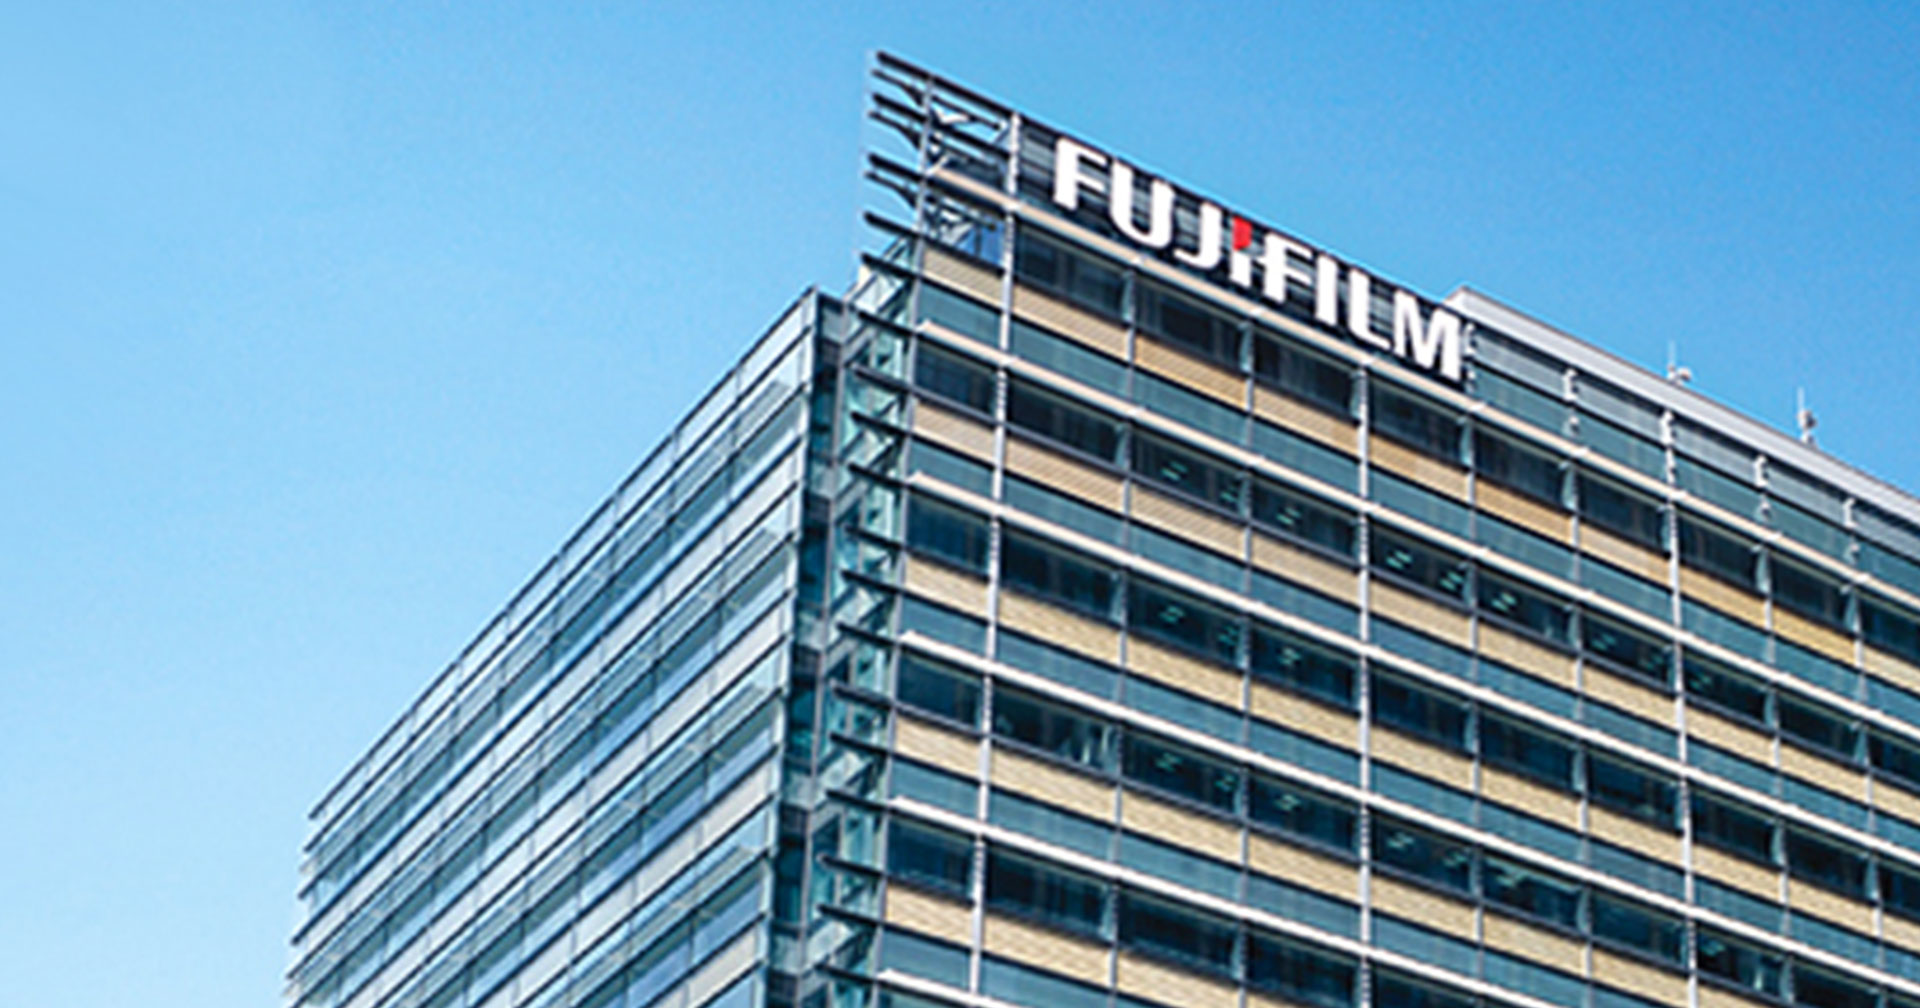 Fujifilm ถูก ransomware โจมตี! ประกาศปิดเซิร์ฟเวอร์บางส่วน